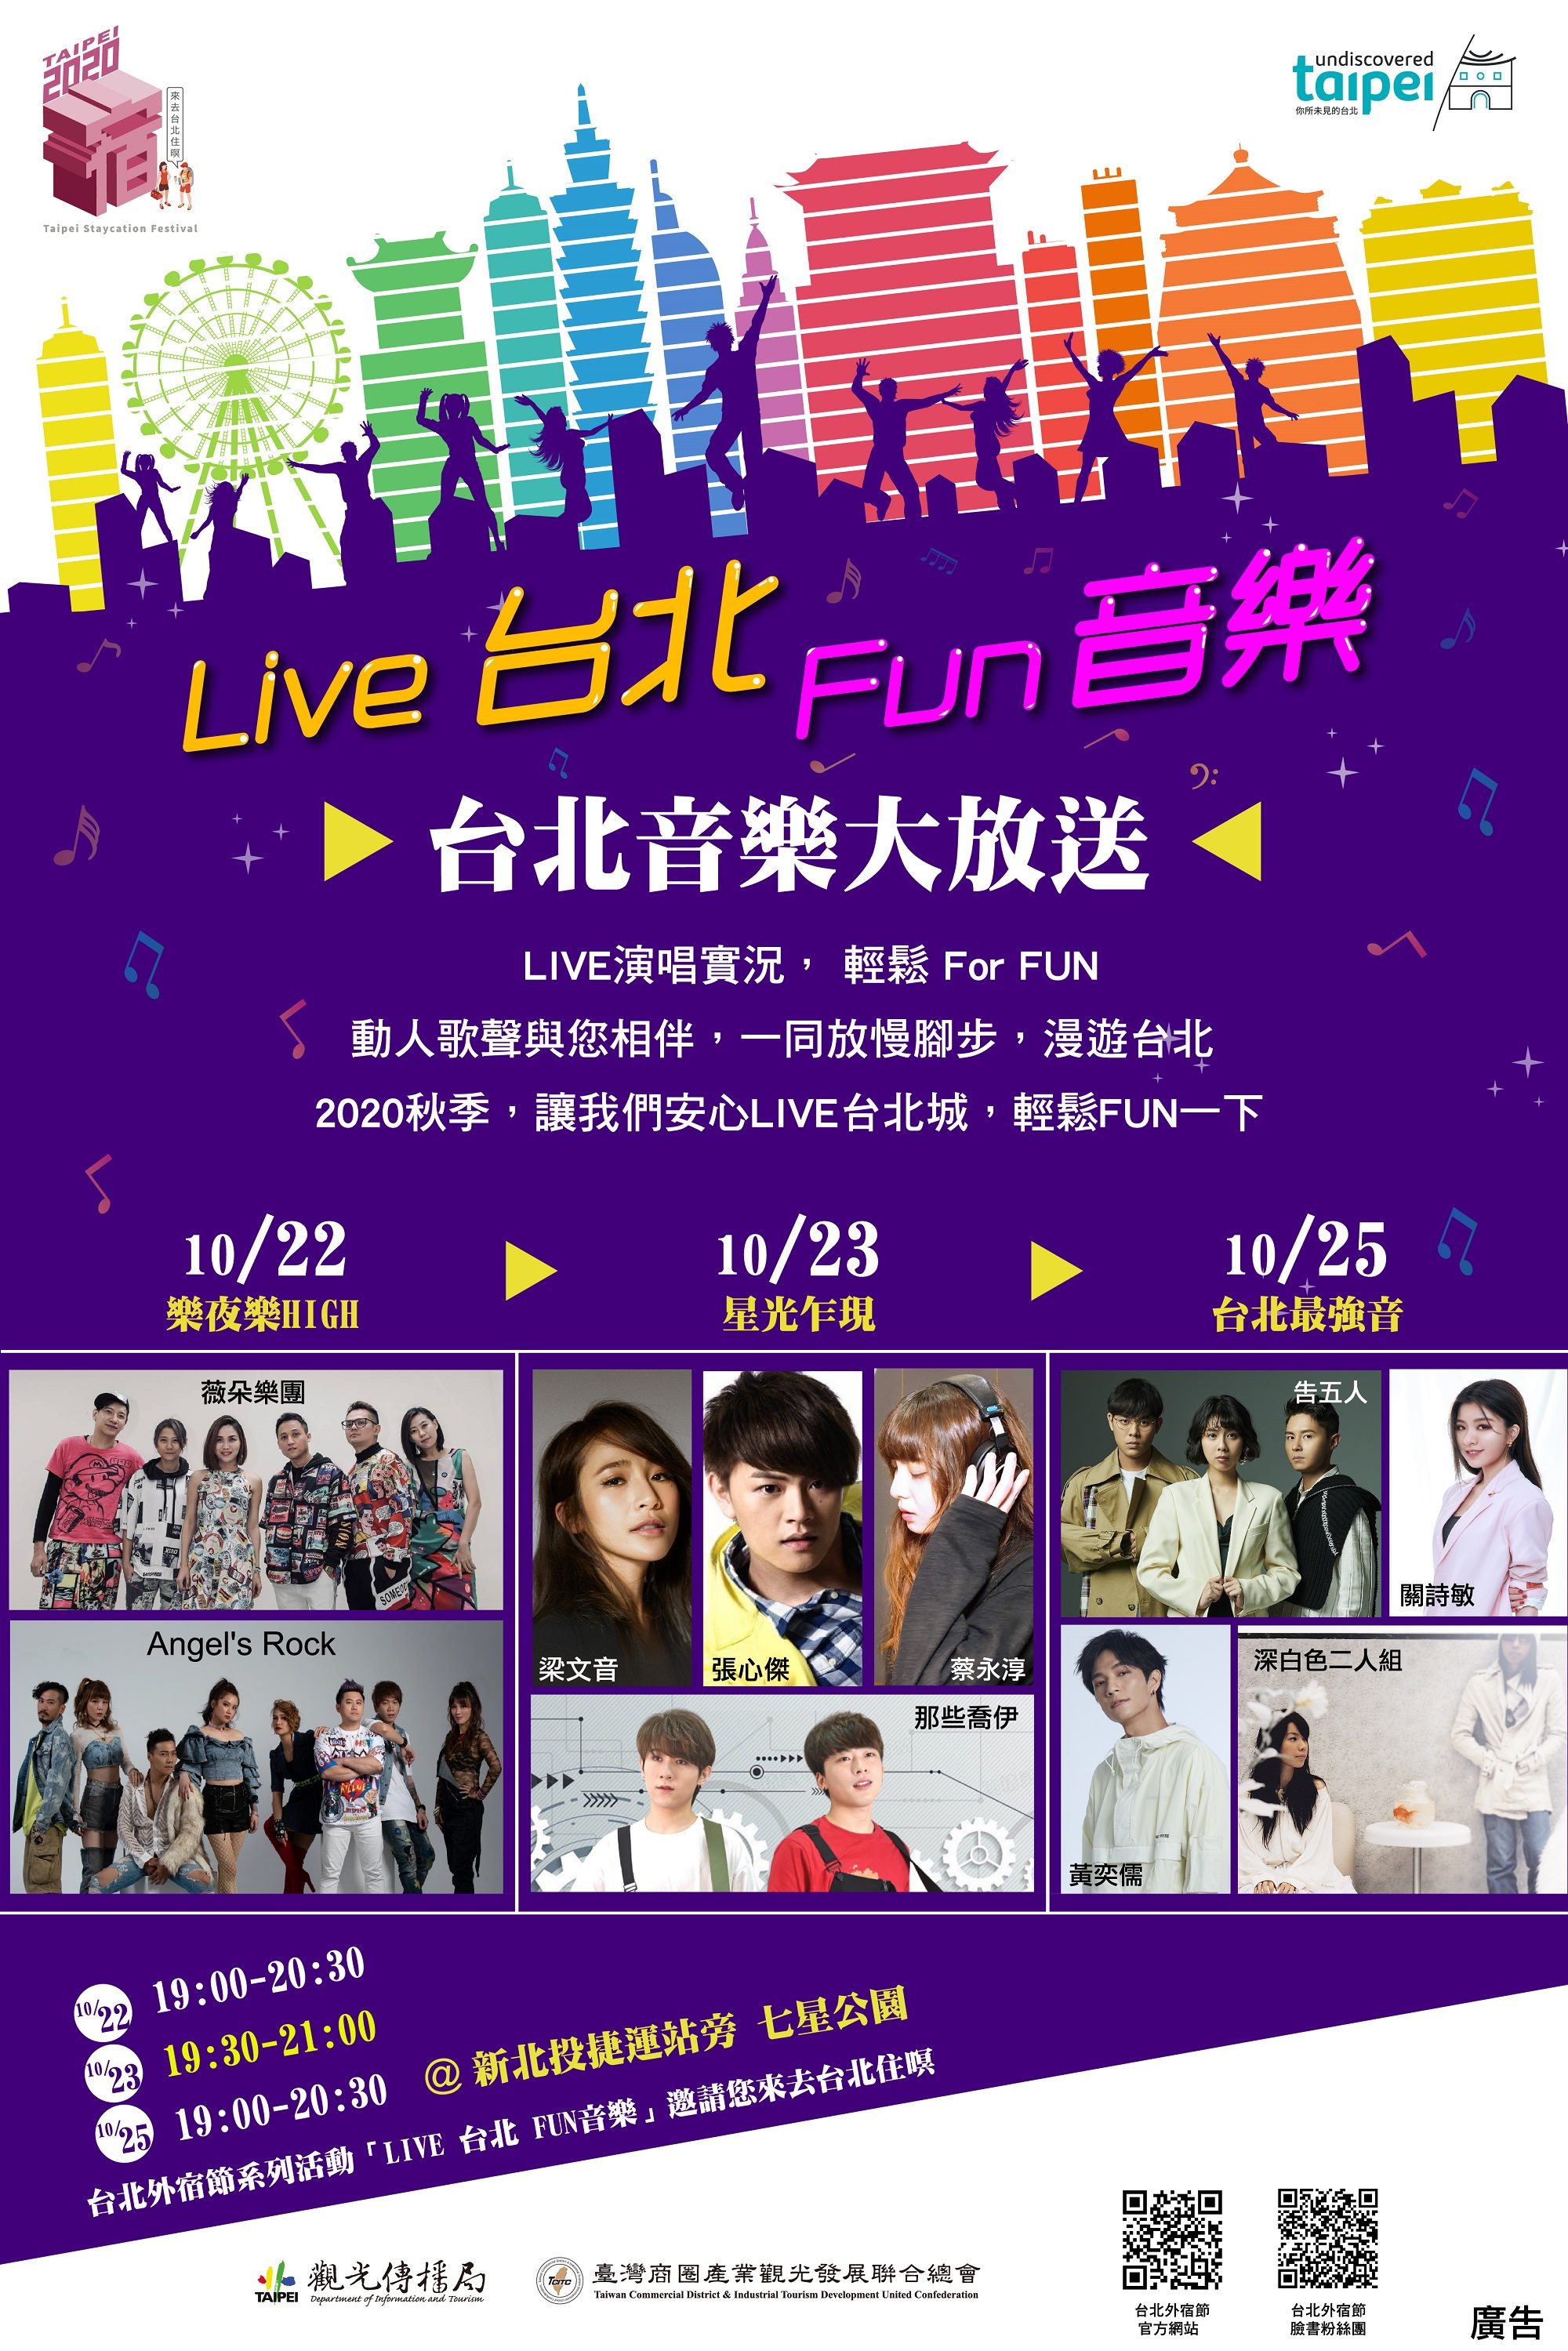 「台北外宿節-Live台北Fun音樂」將於10/22、23、25三天晚上在新北投捷運站旁七星公園熱鬧開唱。